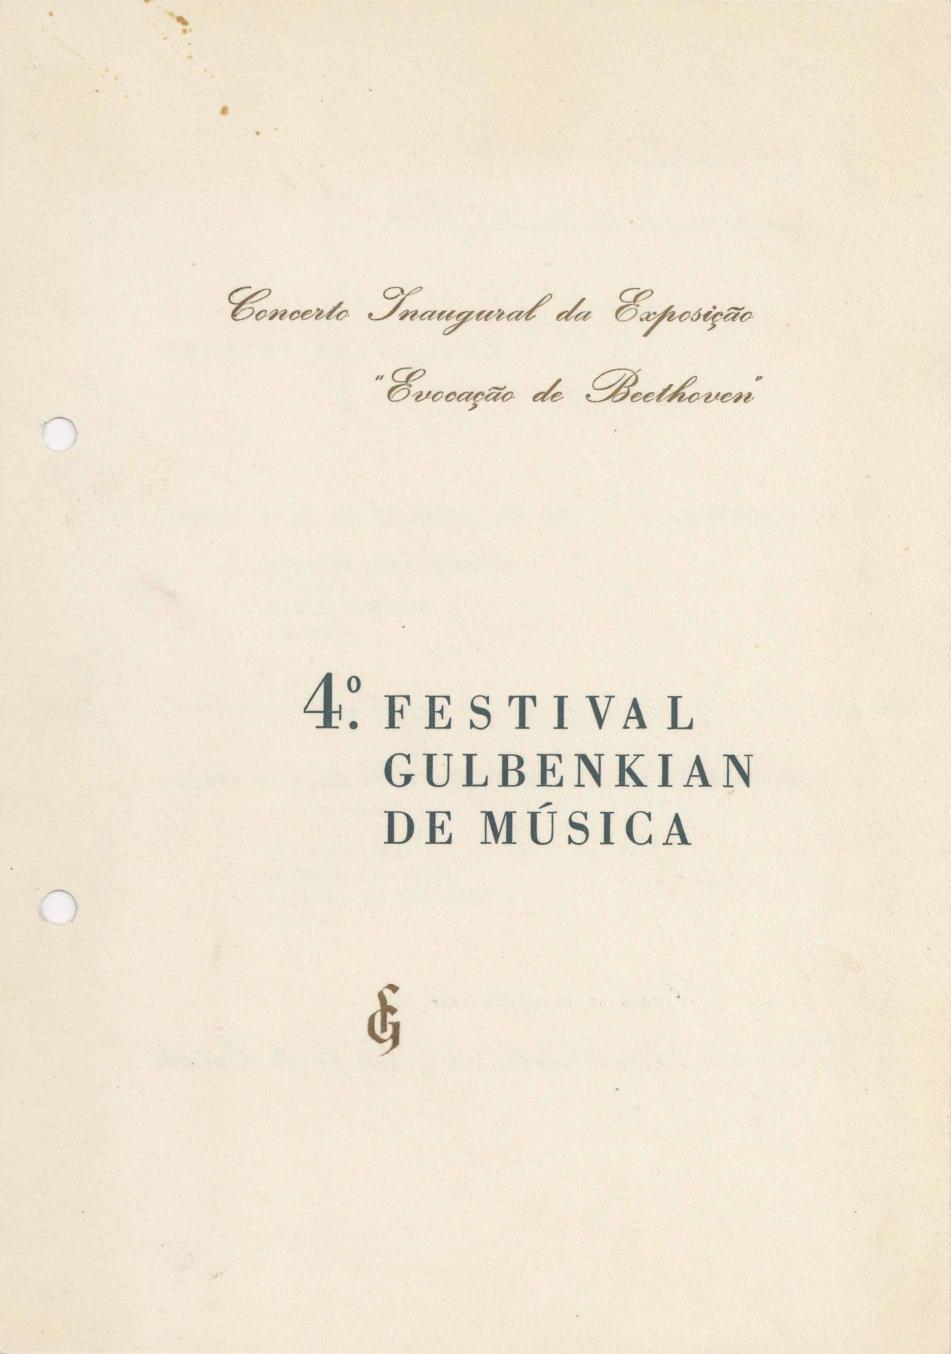 Evocação de Bethoven. 4.º Festival Gulbenkian de Música [concerto inaugural]